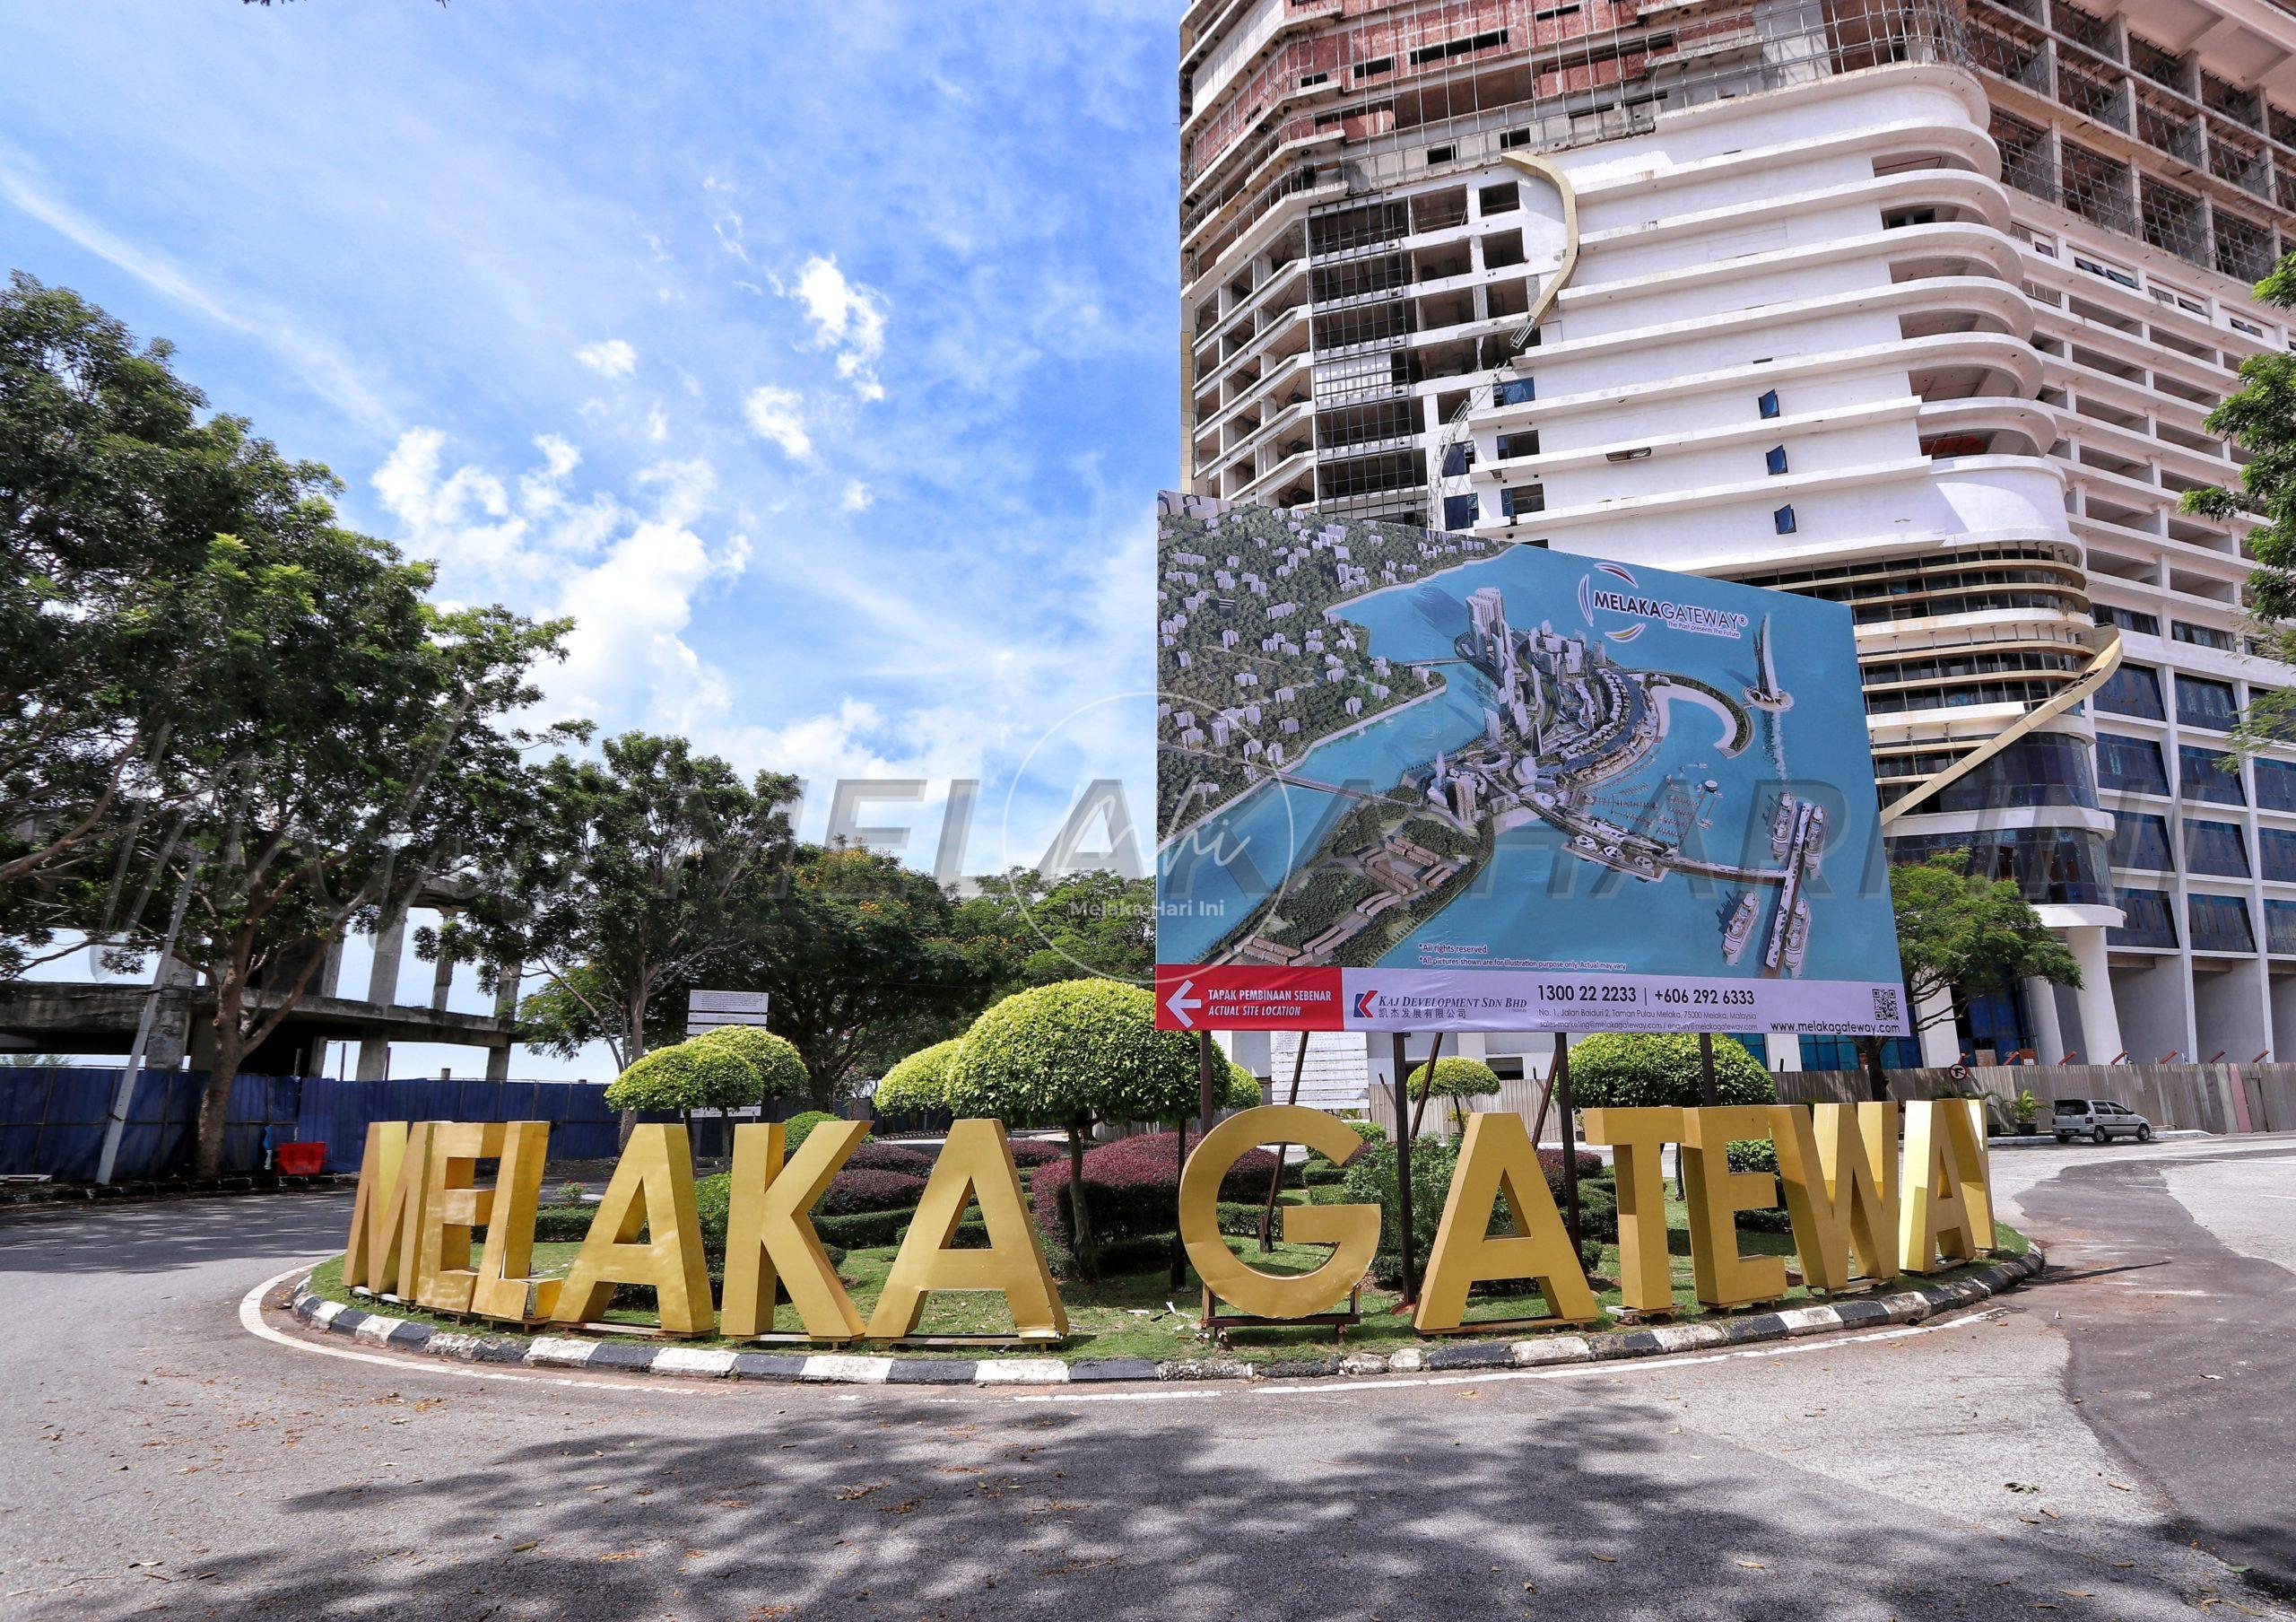 Melaka Gateway bakal jadi ‘pintu’ pelaburan Asia